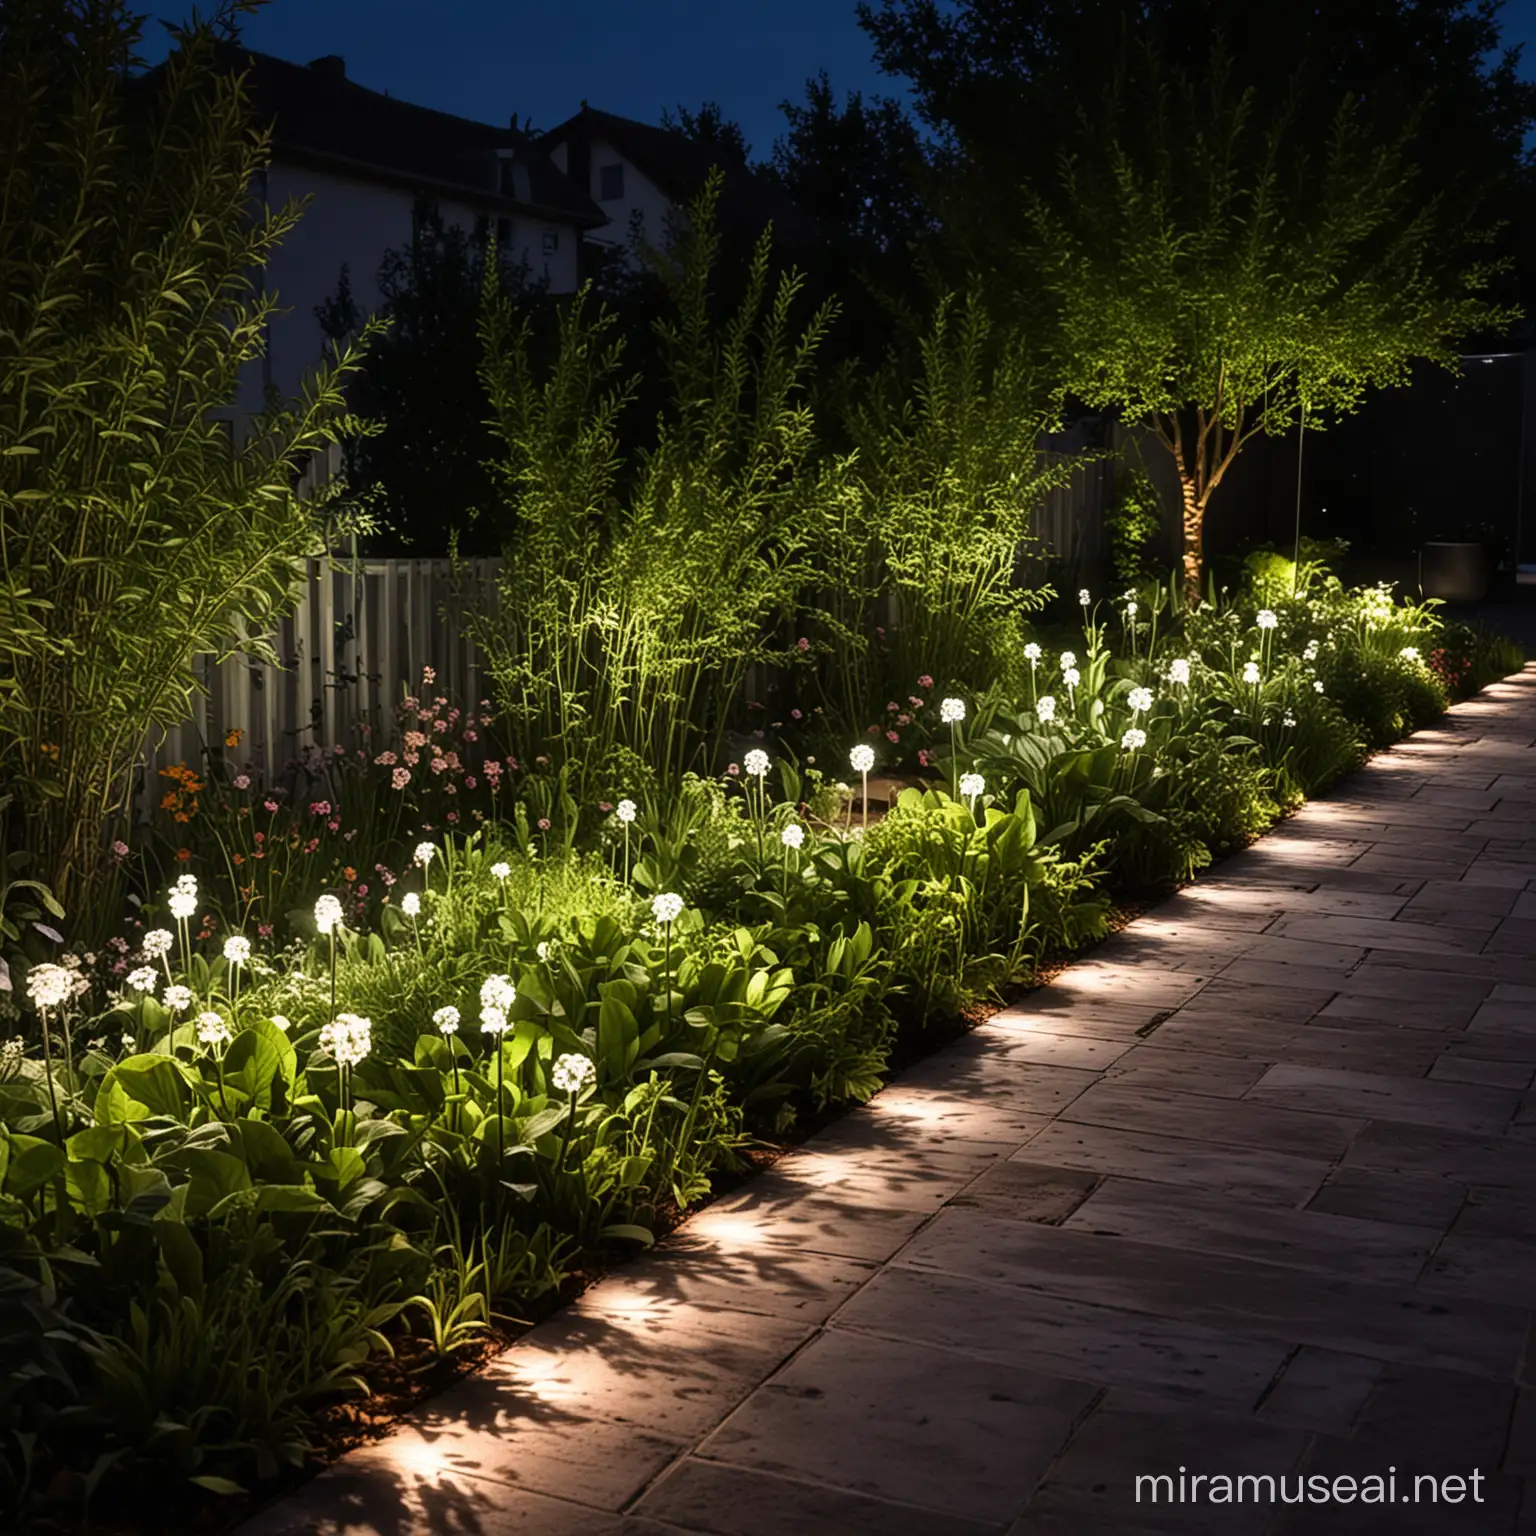 Jardín iluminado por luces LED en la noche.
